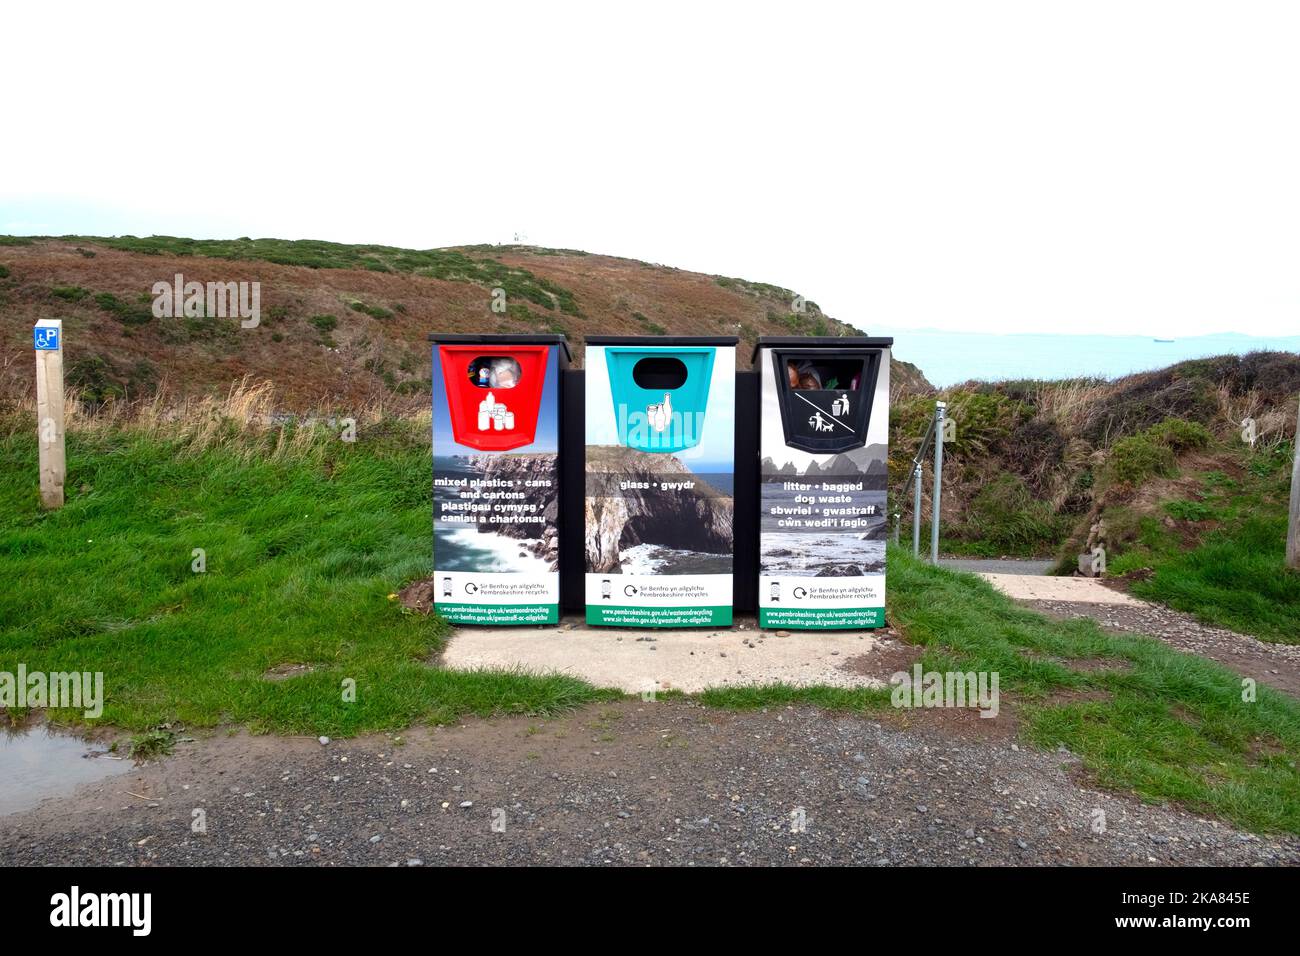 Bacs de recyclage bilingues anglais gallois à la campagne sur la côte du Pembrokeshire Marloes West Wales Royaume-Uni Grande-Bretagne KATHY DEWITT Banque D'Images